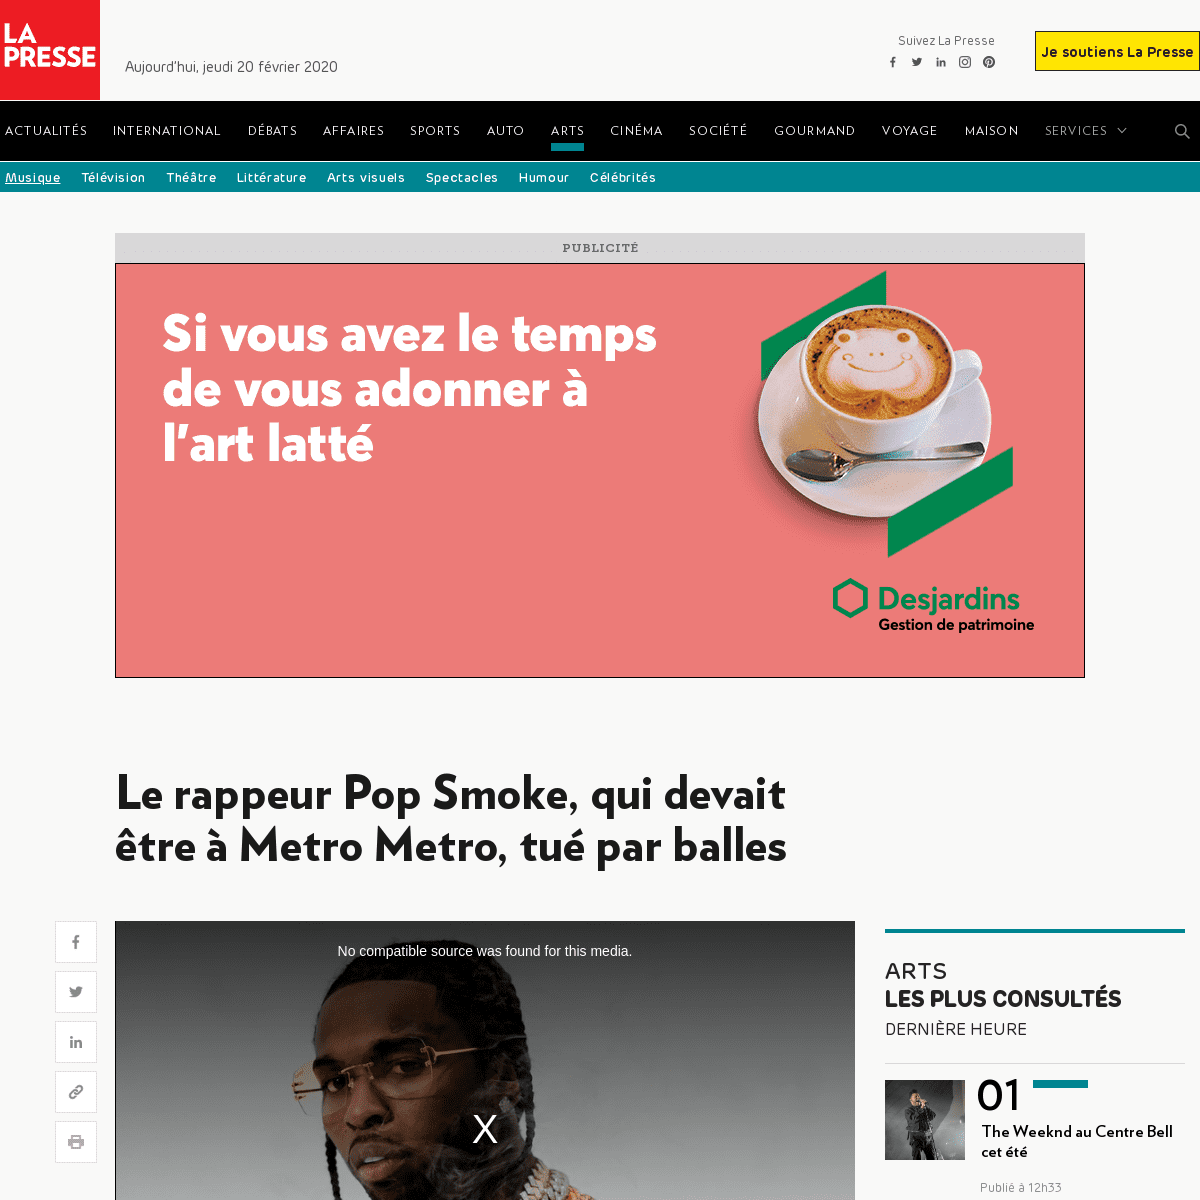 A complete backup of www.lapresse.ca/arts/musique/202002/19/01-5261553-le-rappeur-pop-smoke-qui-devait-etre-a-metro-metro-tue-pa